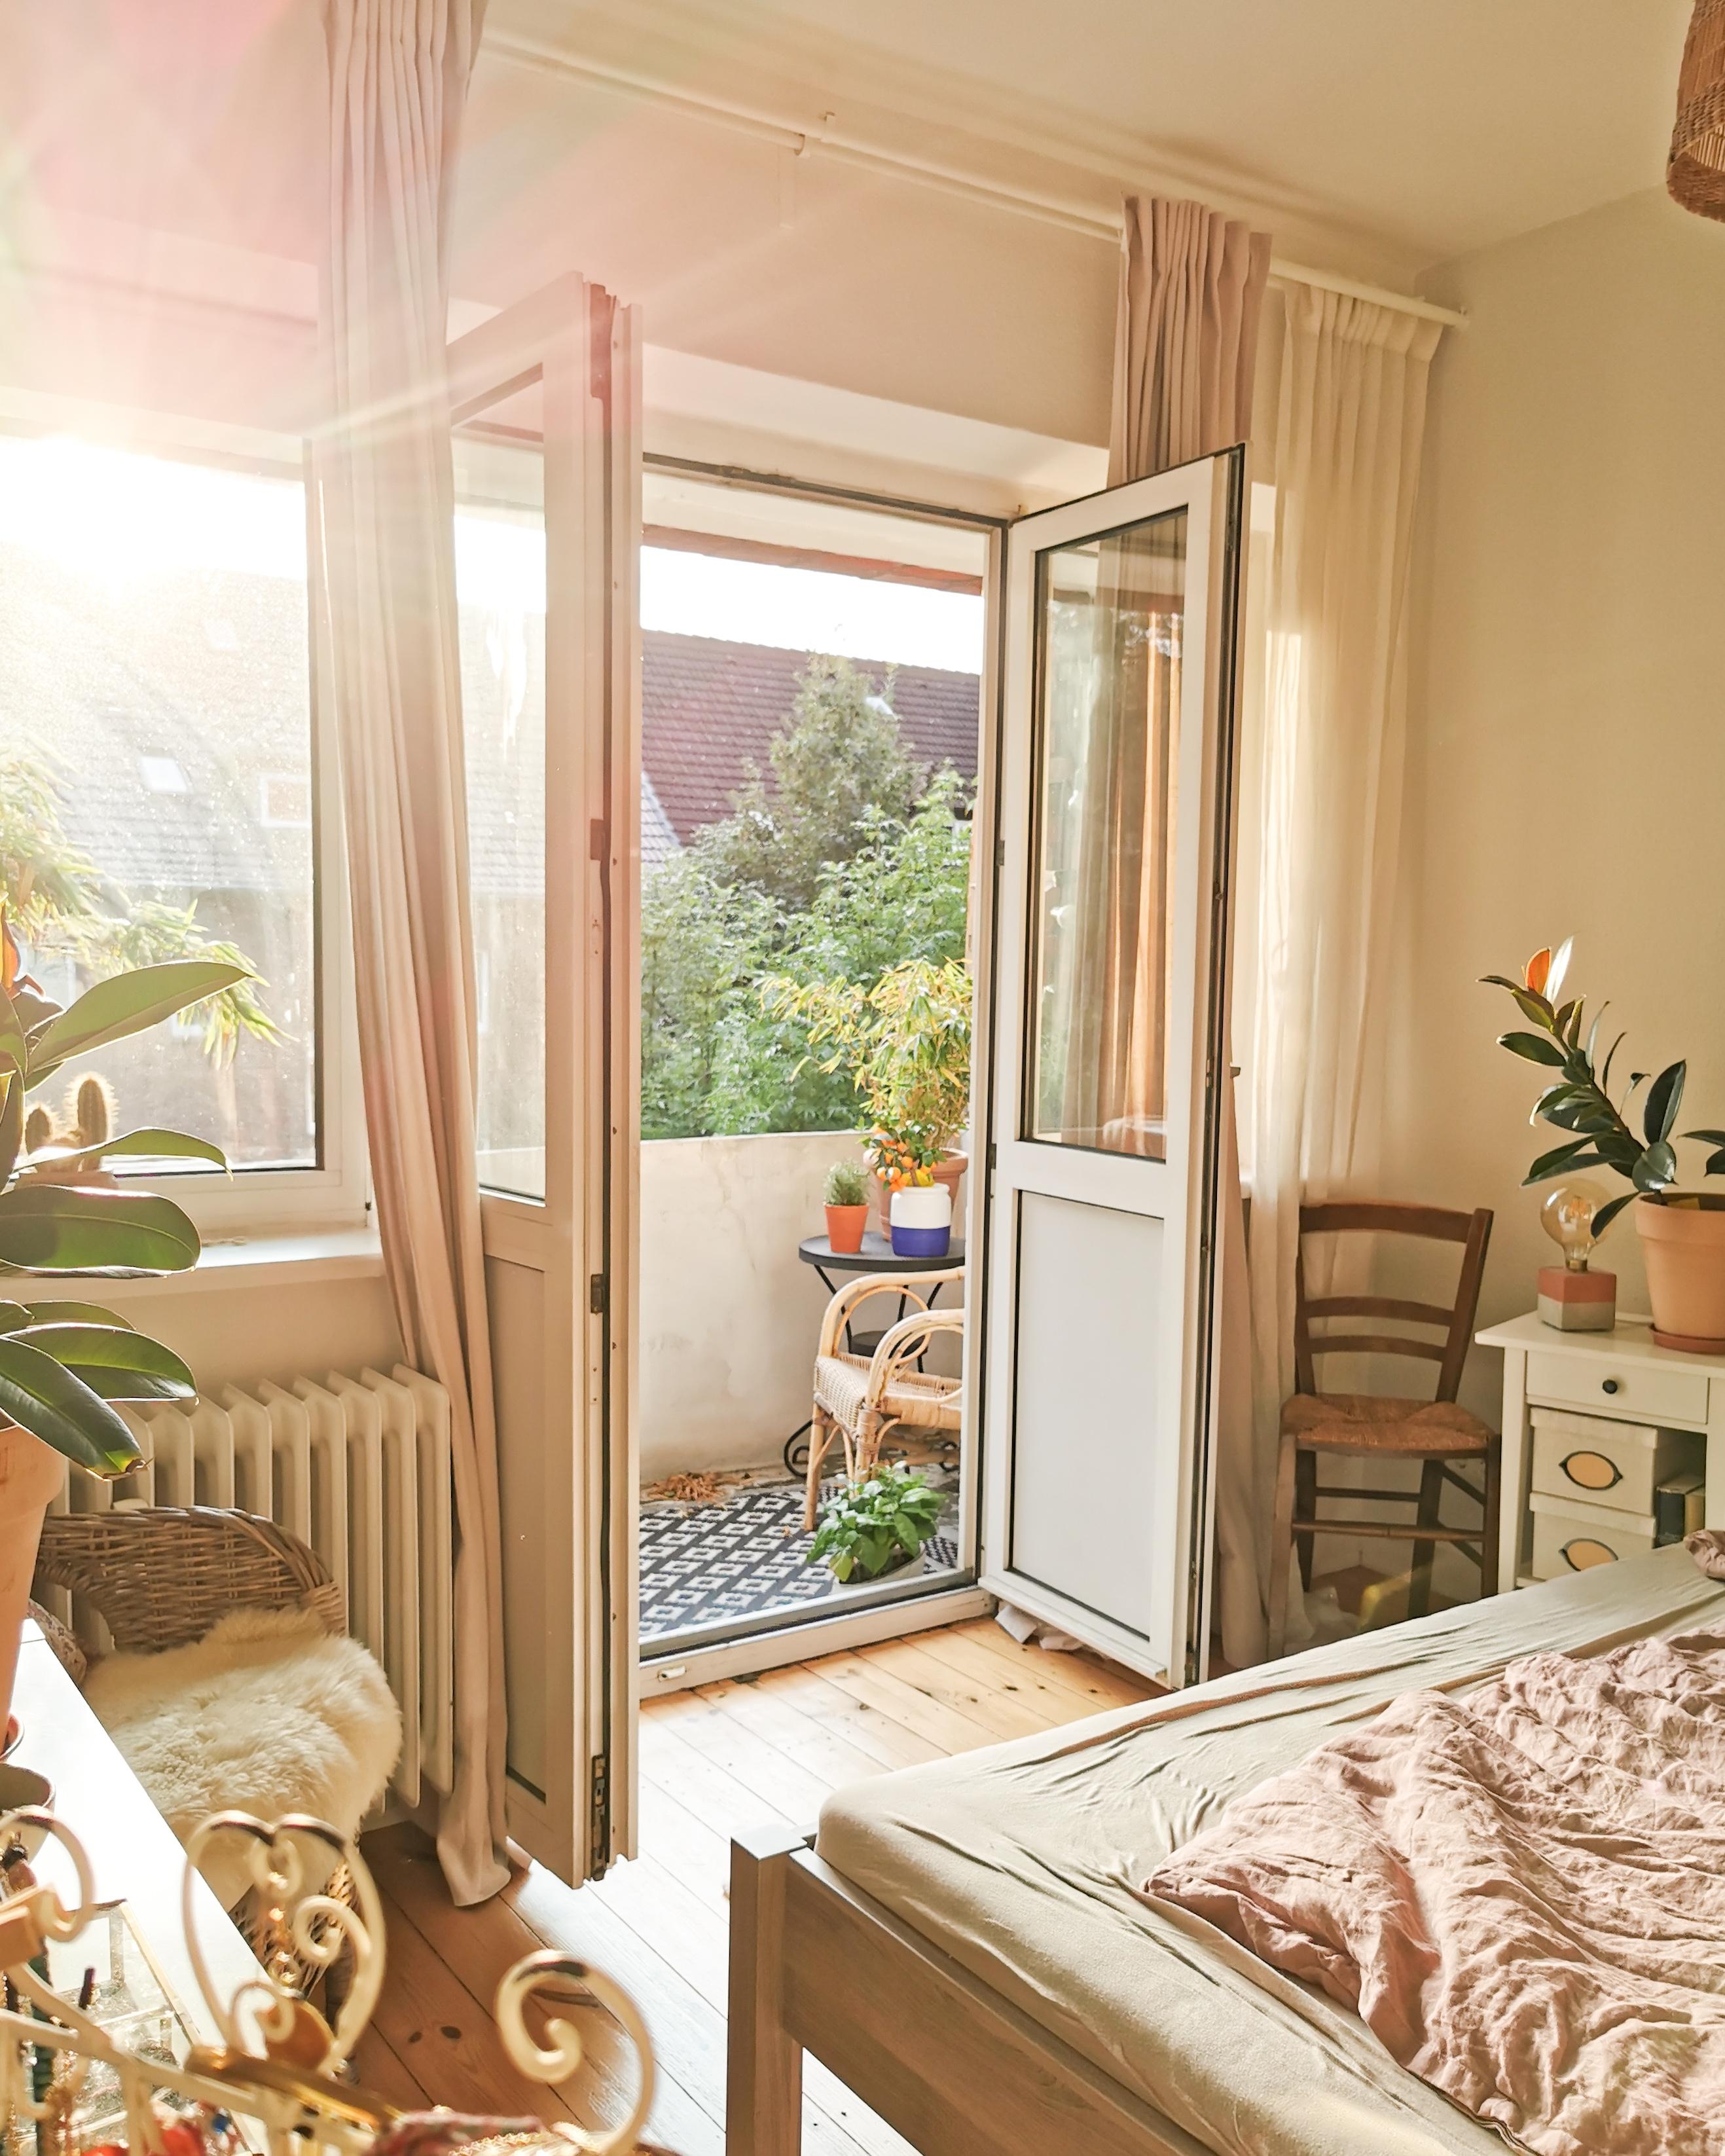 Herbstsonne 🧡🙂 #schlafzimmer #herbst #sonne #endofseptember #balkon #kleinewohnung #boho